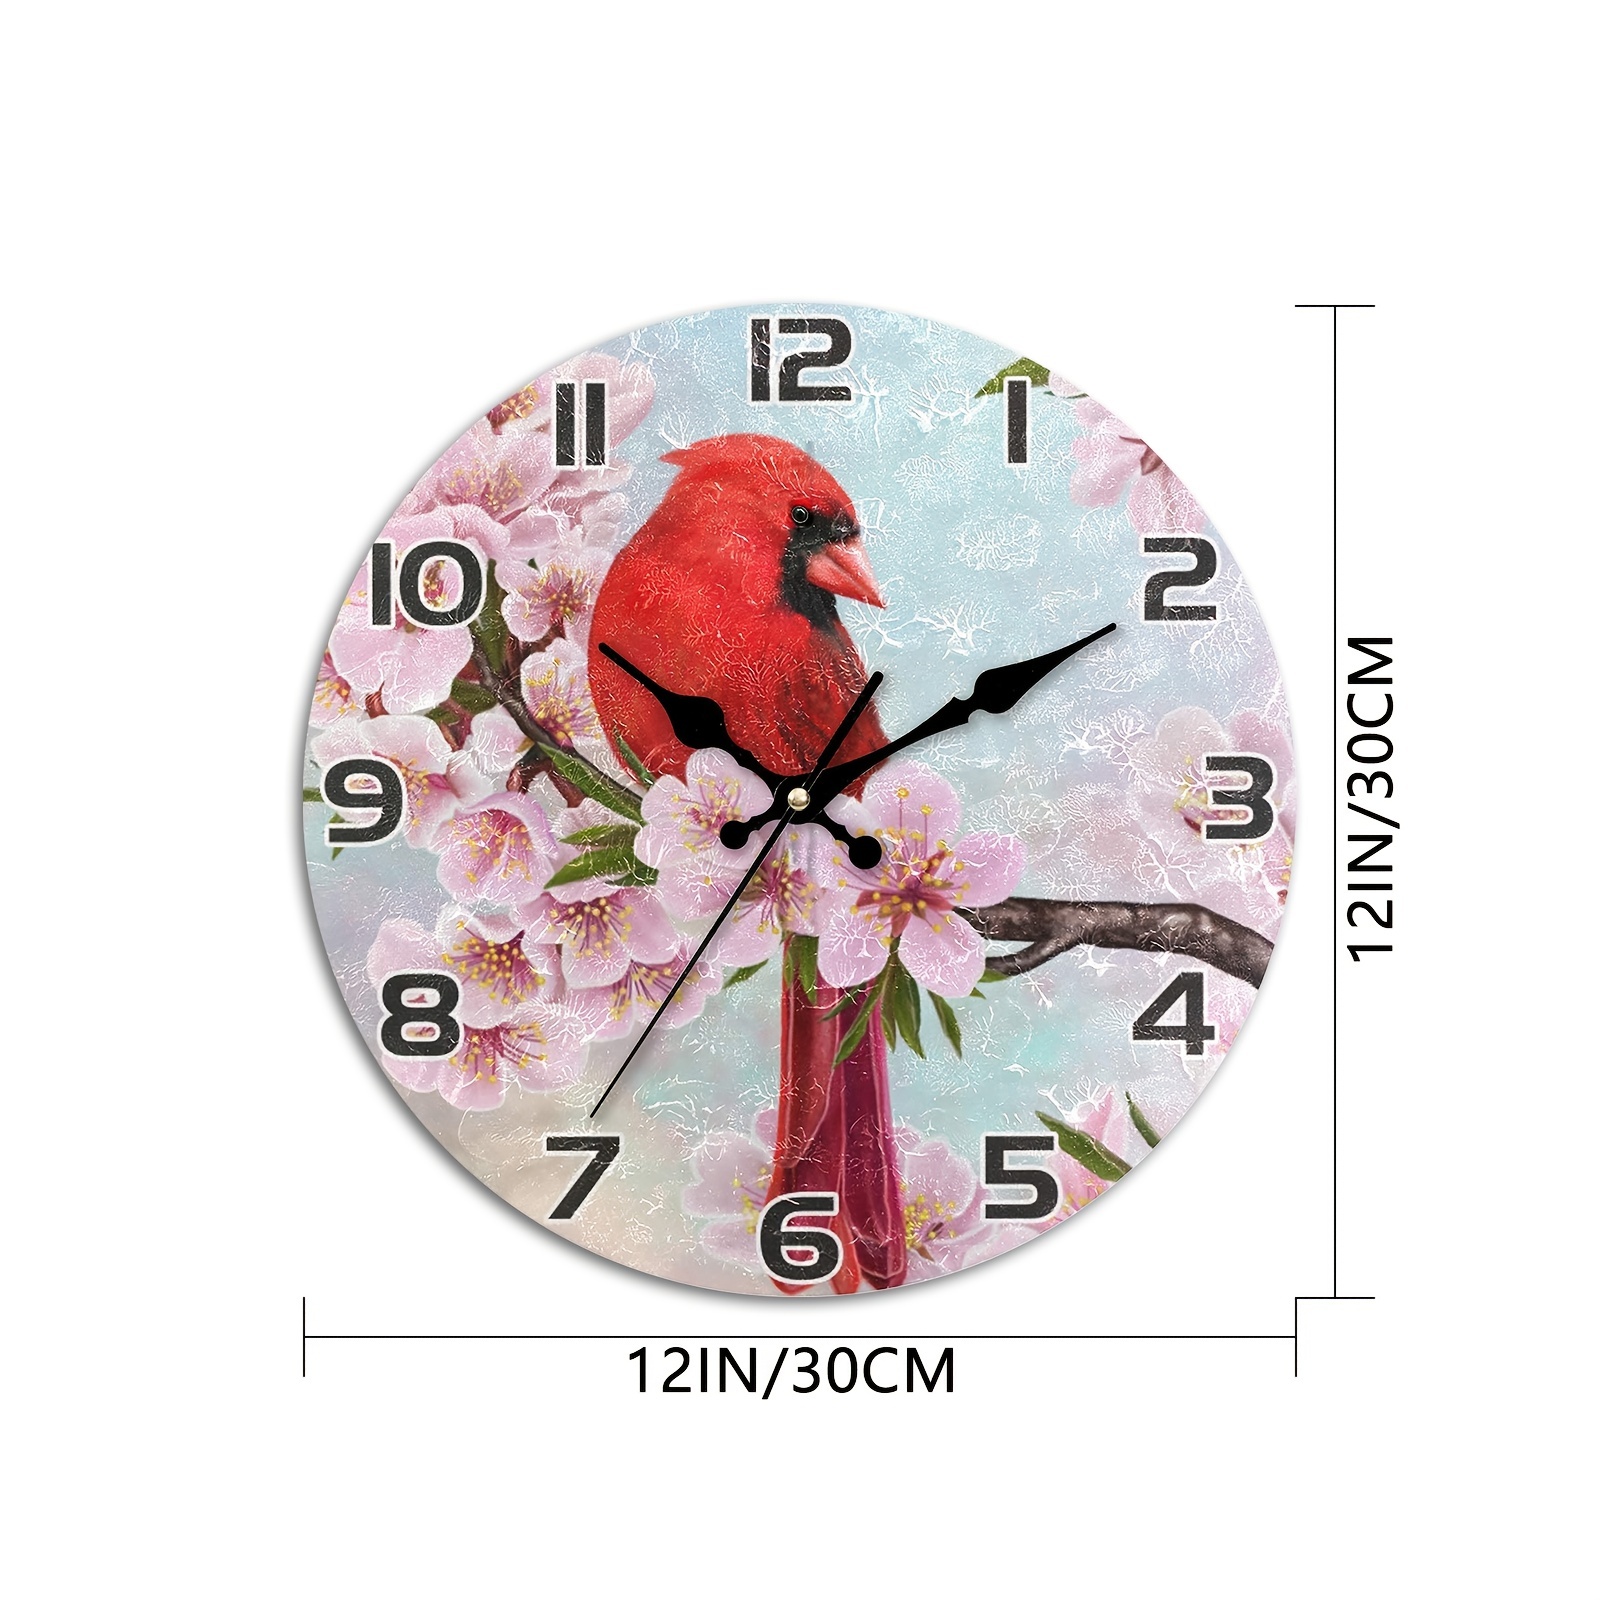 St. Louis Cardinals 3D Bird on the Bat Wall Clock